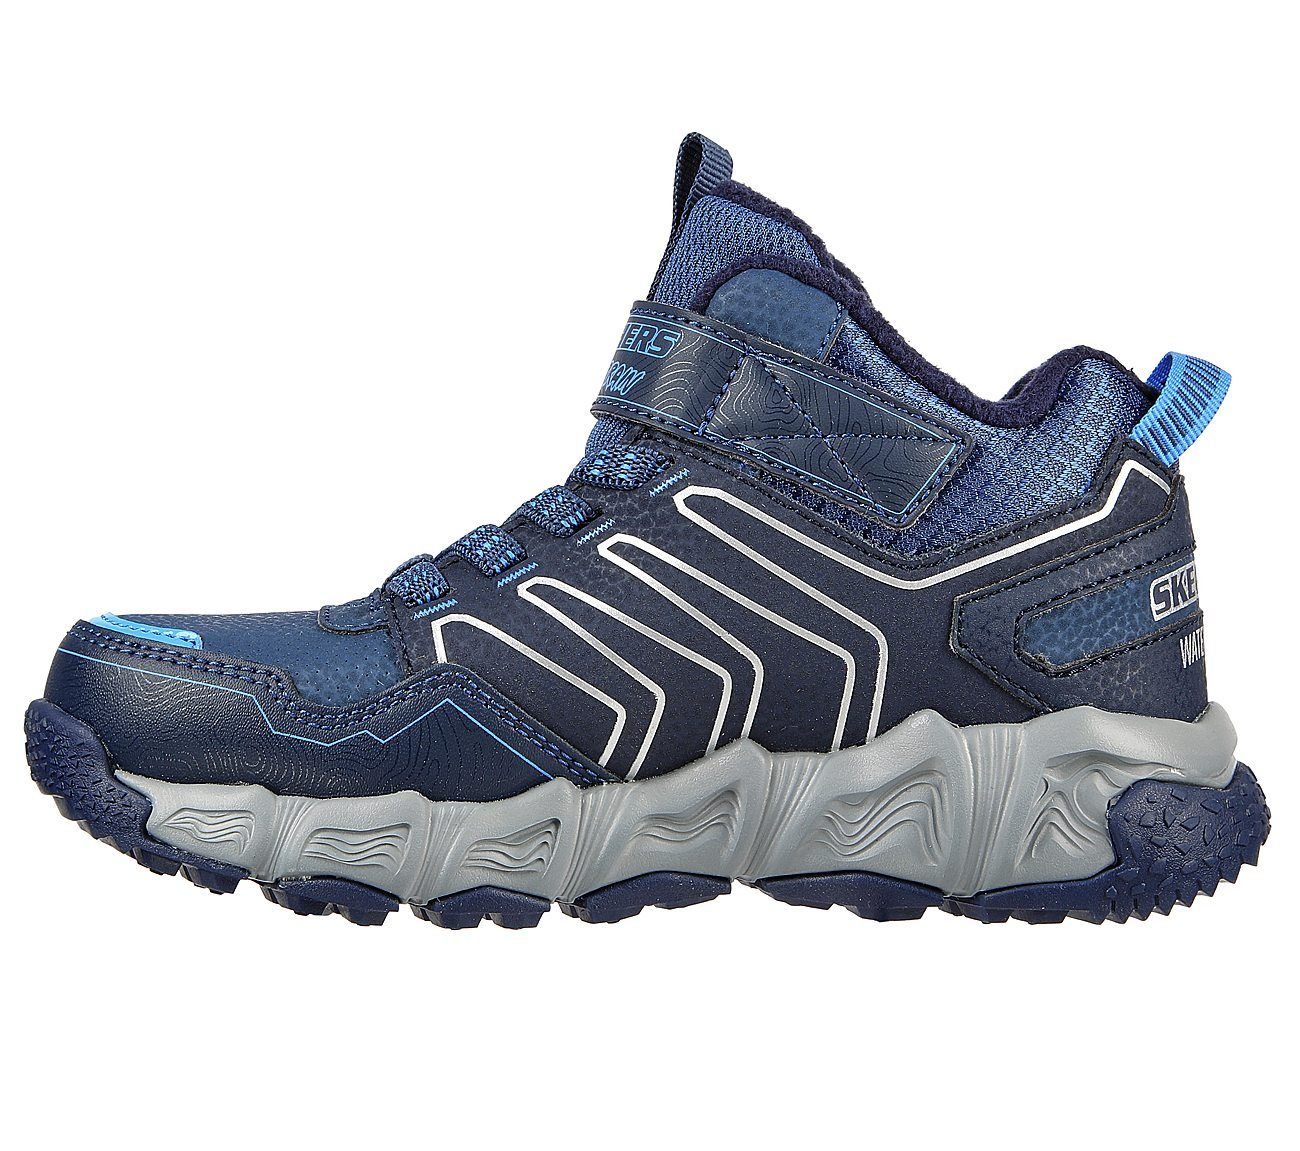 Sneaker navy/blue Skechers Combex